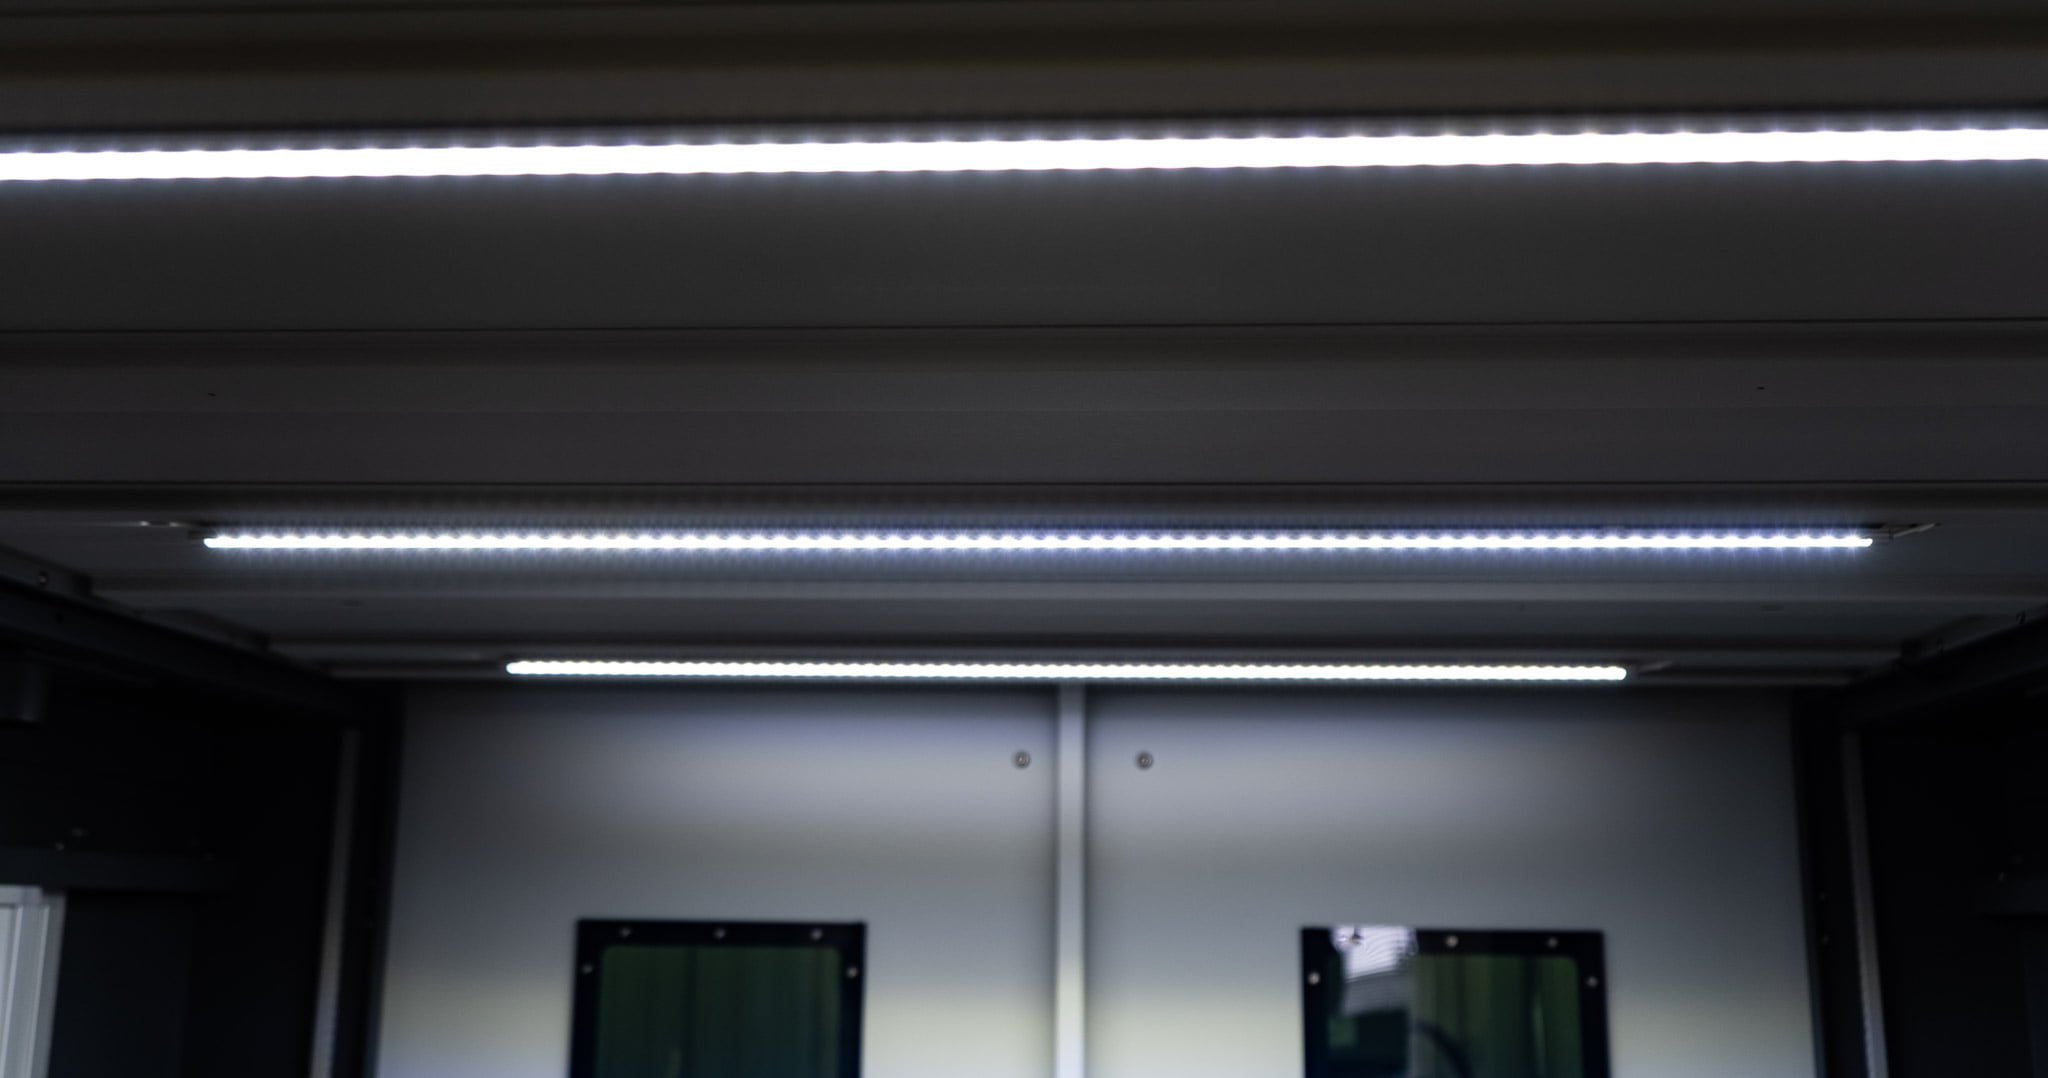 LED laser lights